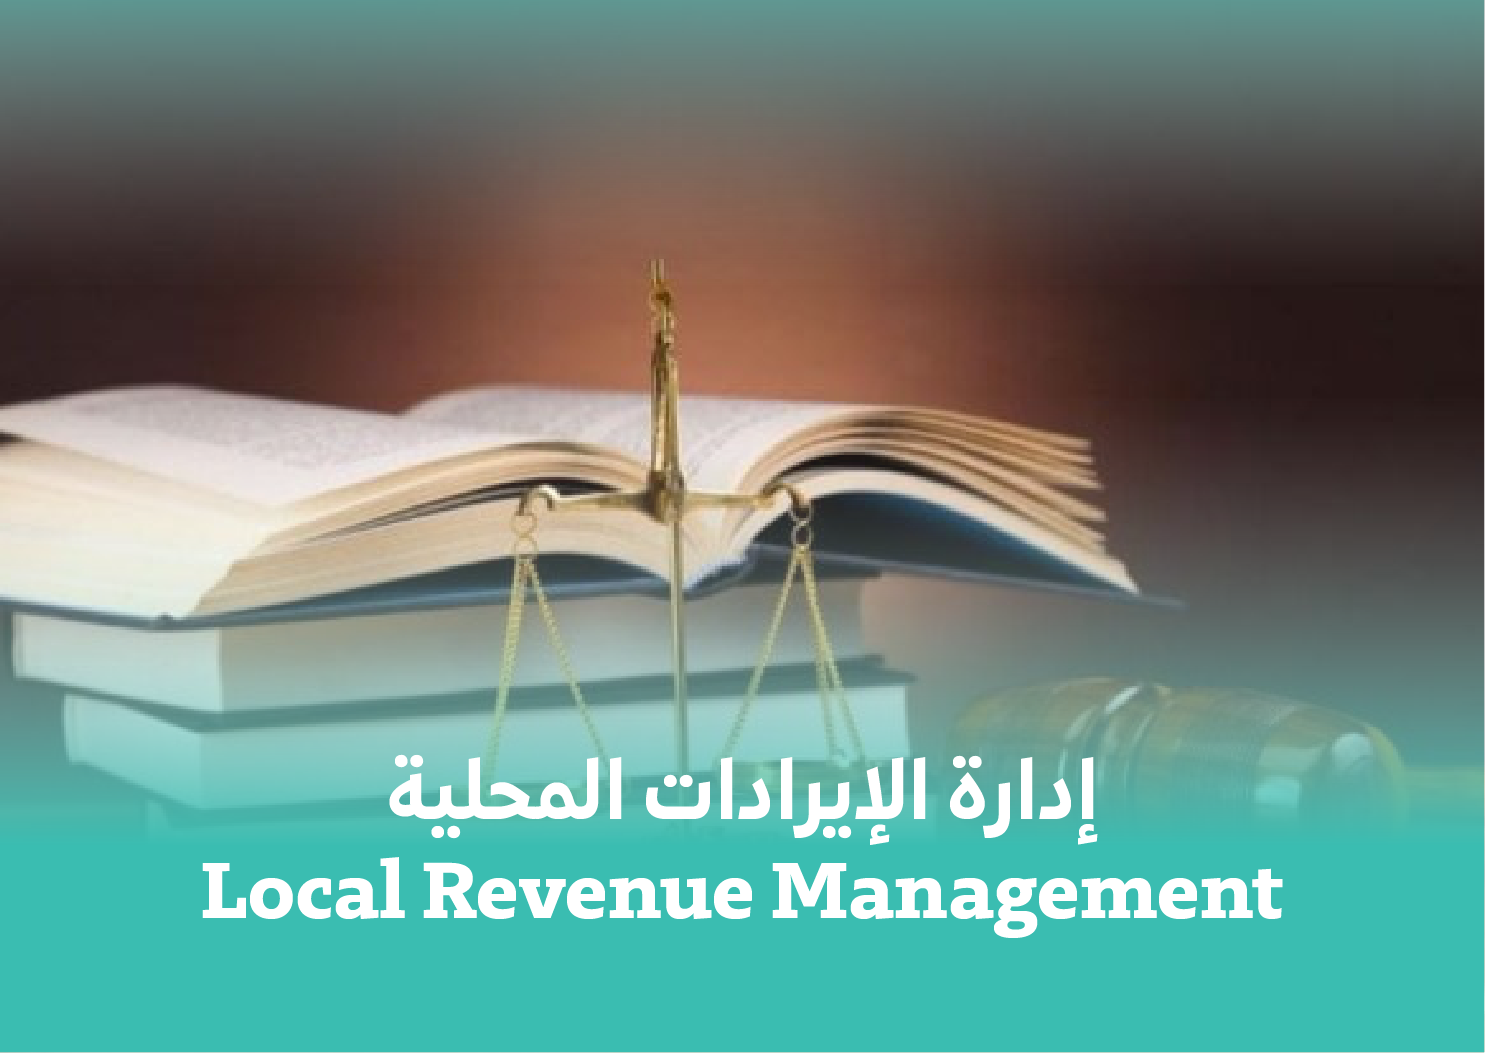  Local Revenue Management